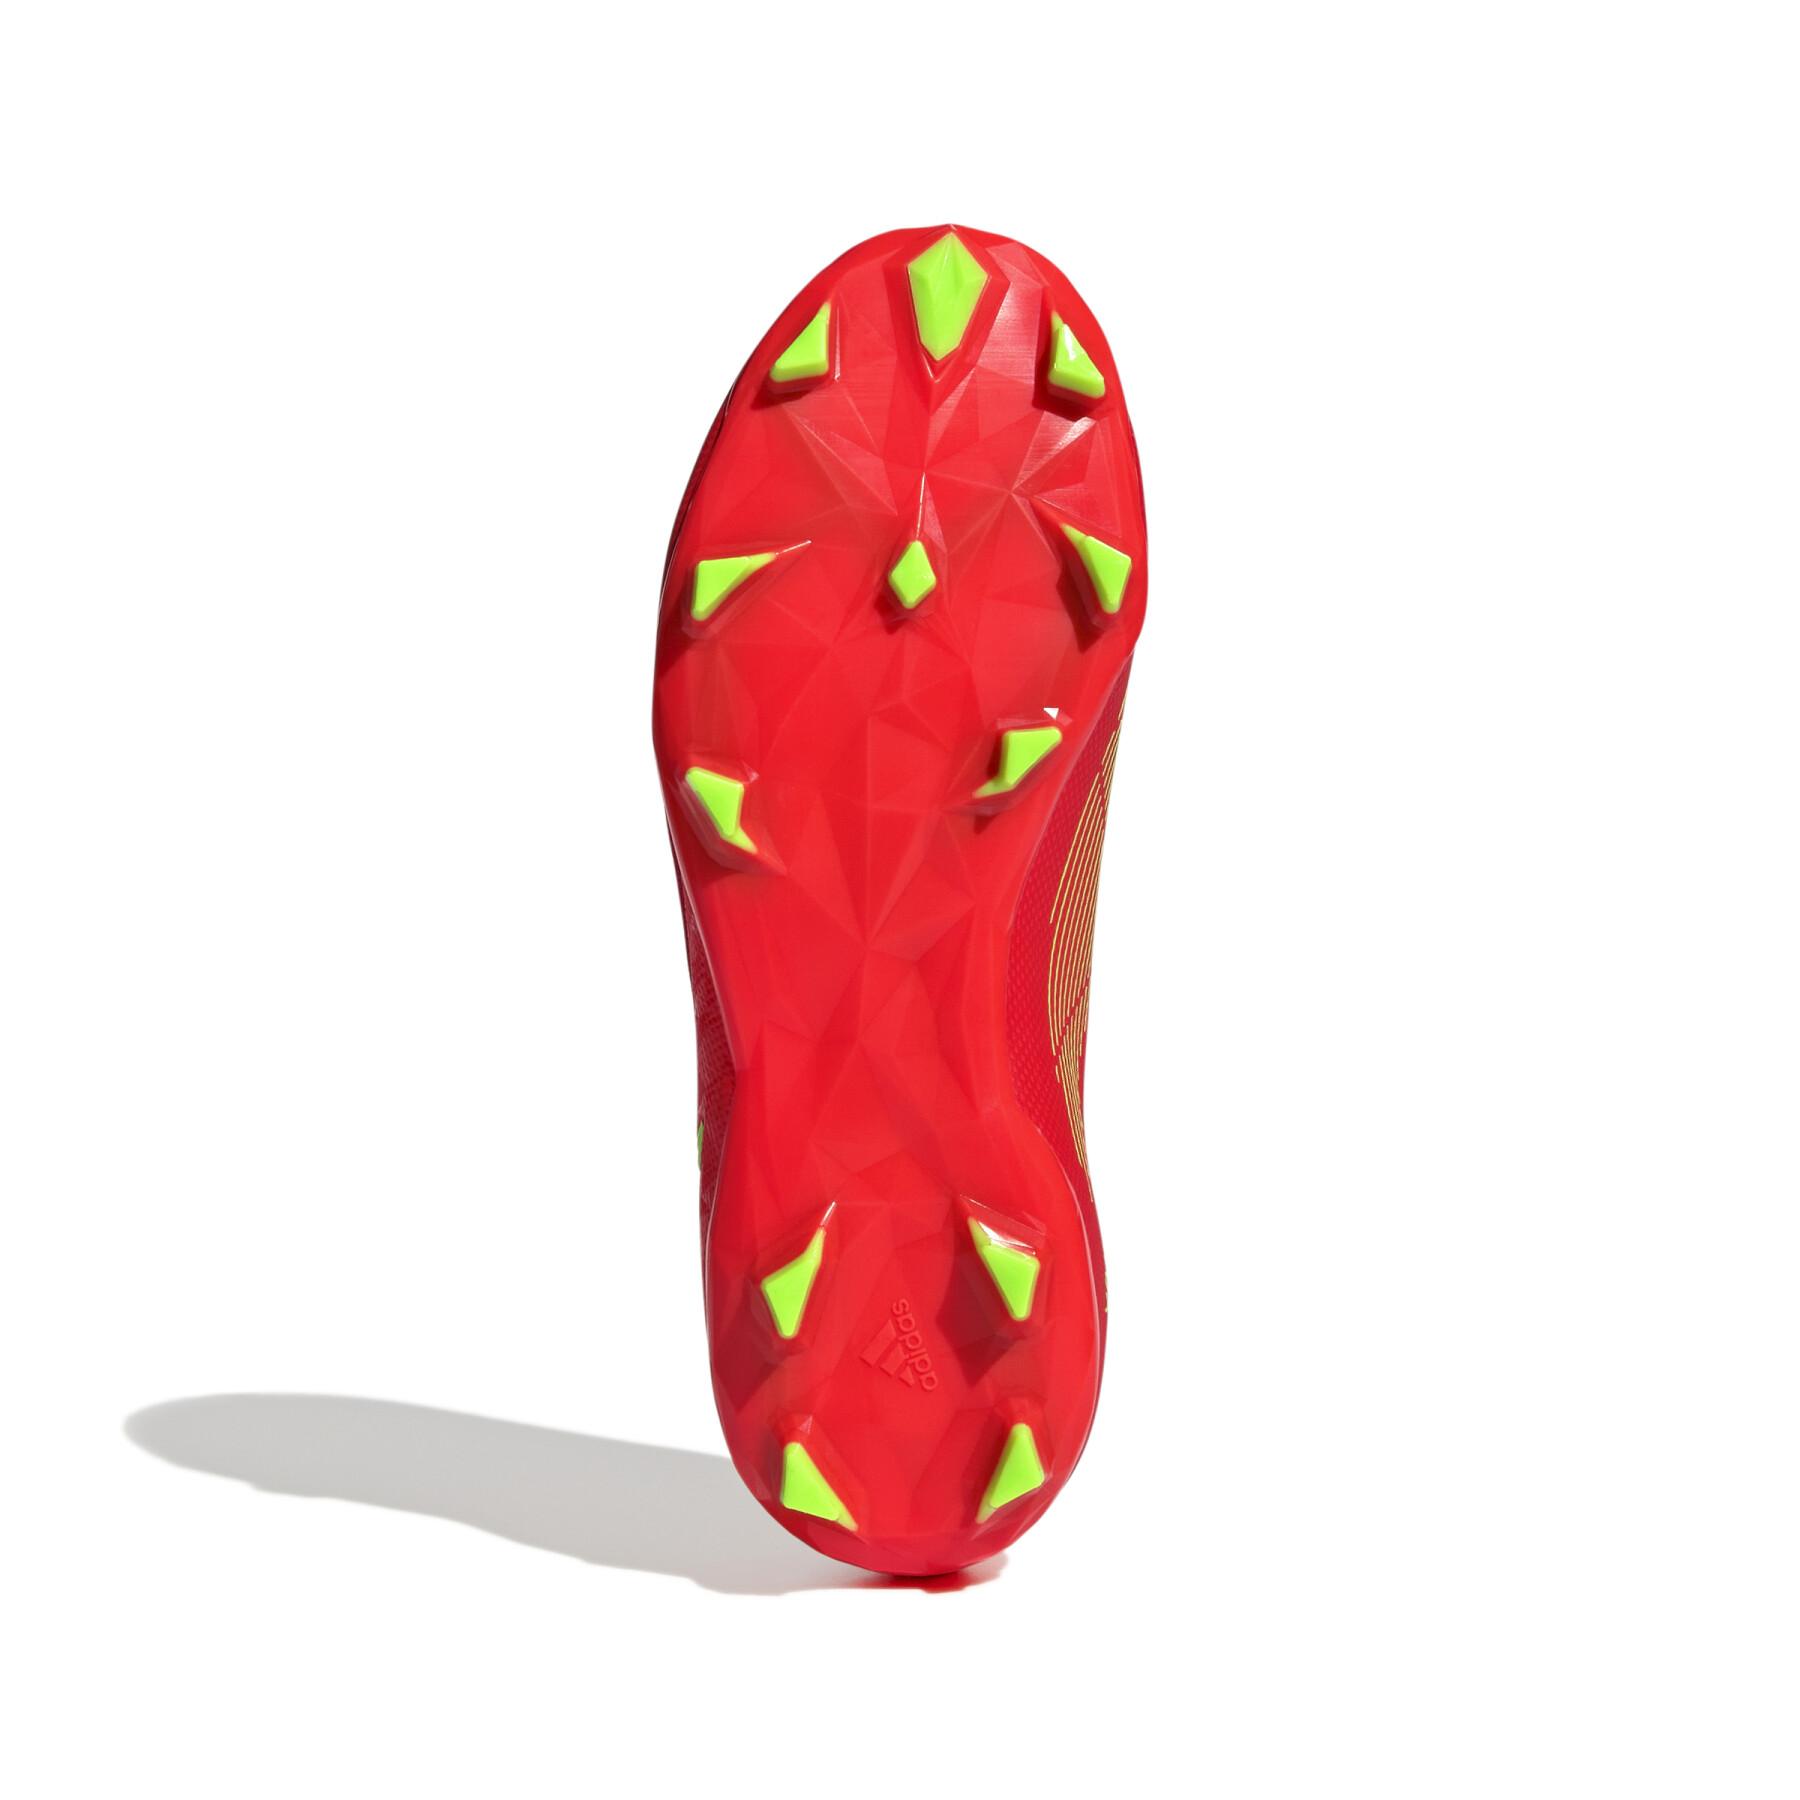 Sapatos de futebol para crianças adidas Predator Edge.3 Laceless FG - Game Data Pack